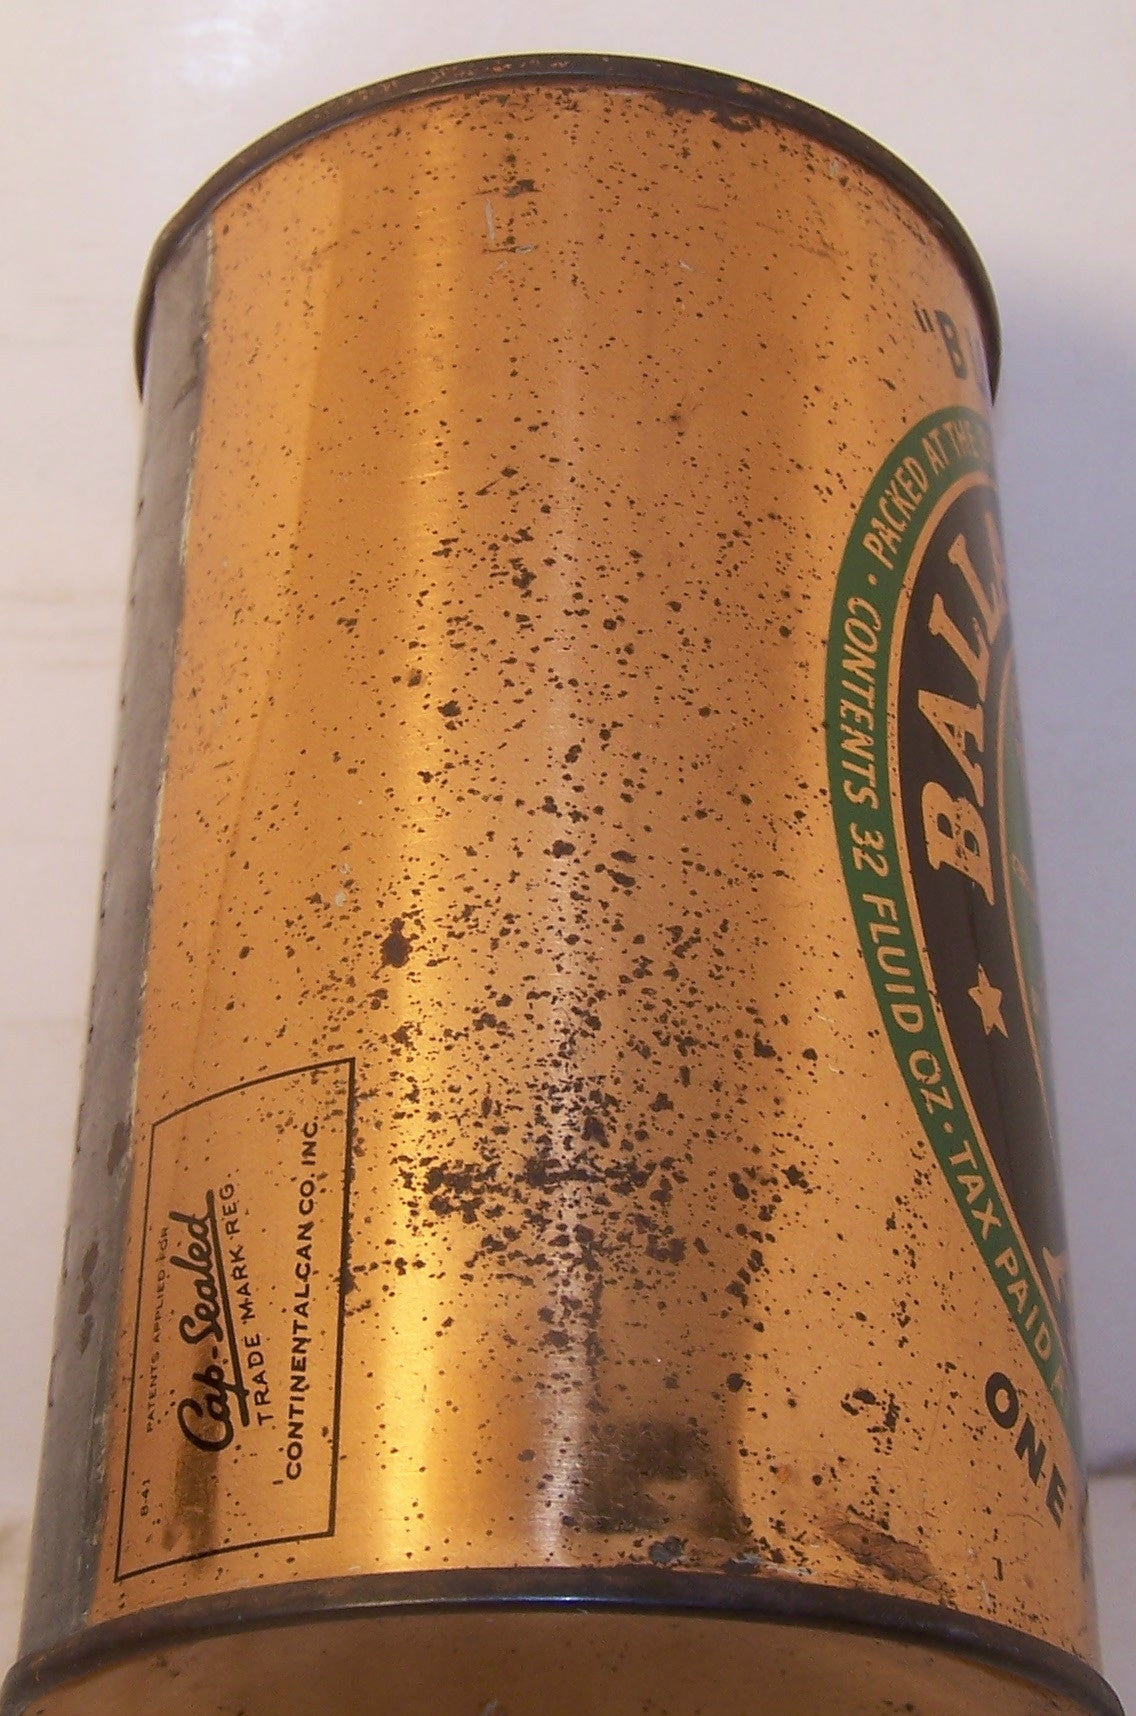 Ballantine Ale "Bumper" USBC 202-8, Grade 1/1-    Sold 12/4/14